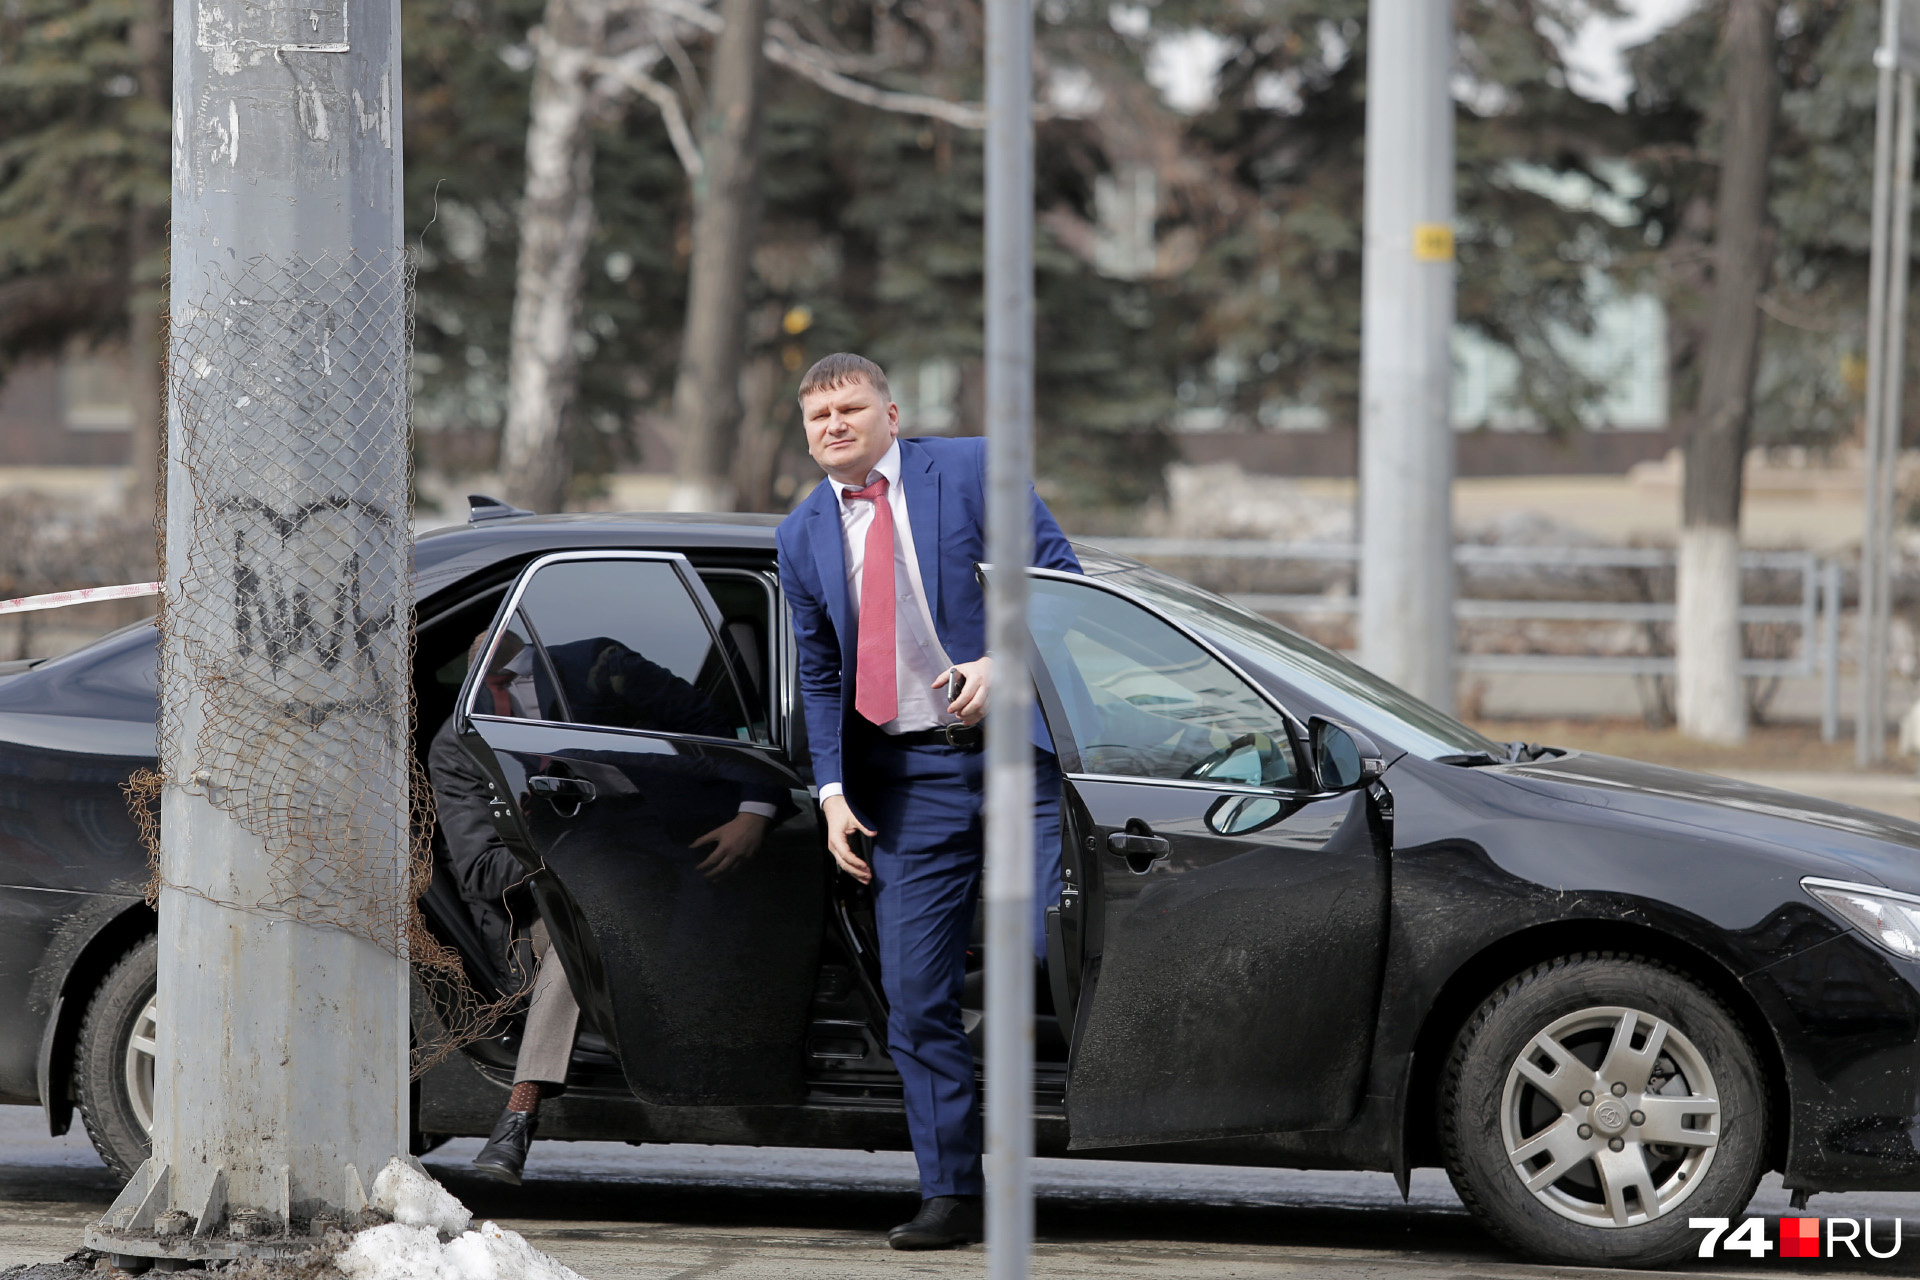 А это пресс-секретарь губернатора Дмитрий Федечкин. Его водитель, видимо, тоже получает около 20 тысяч рублей